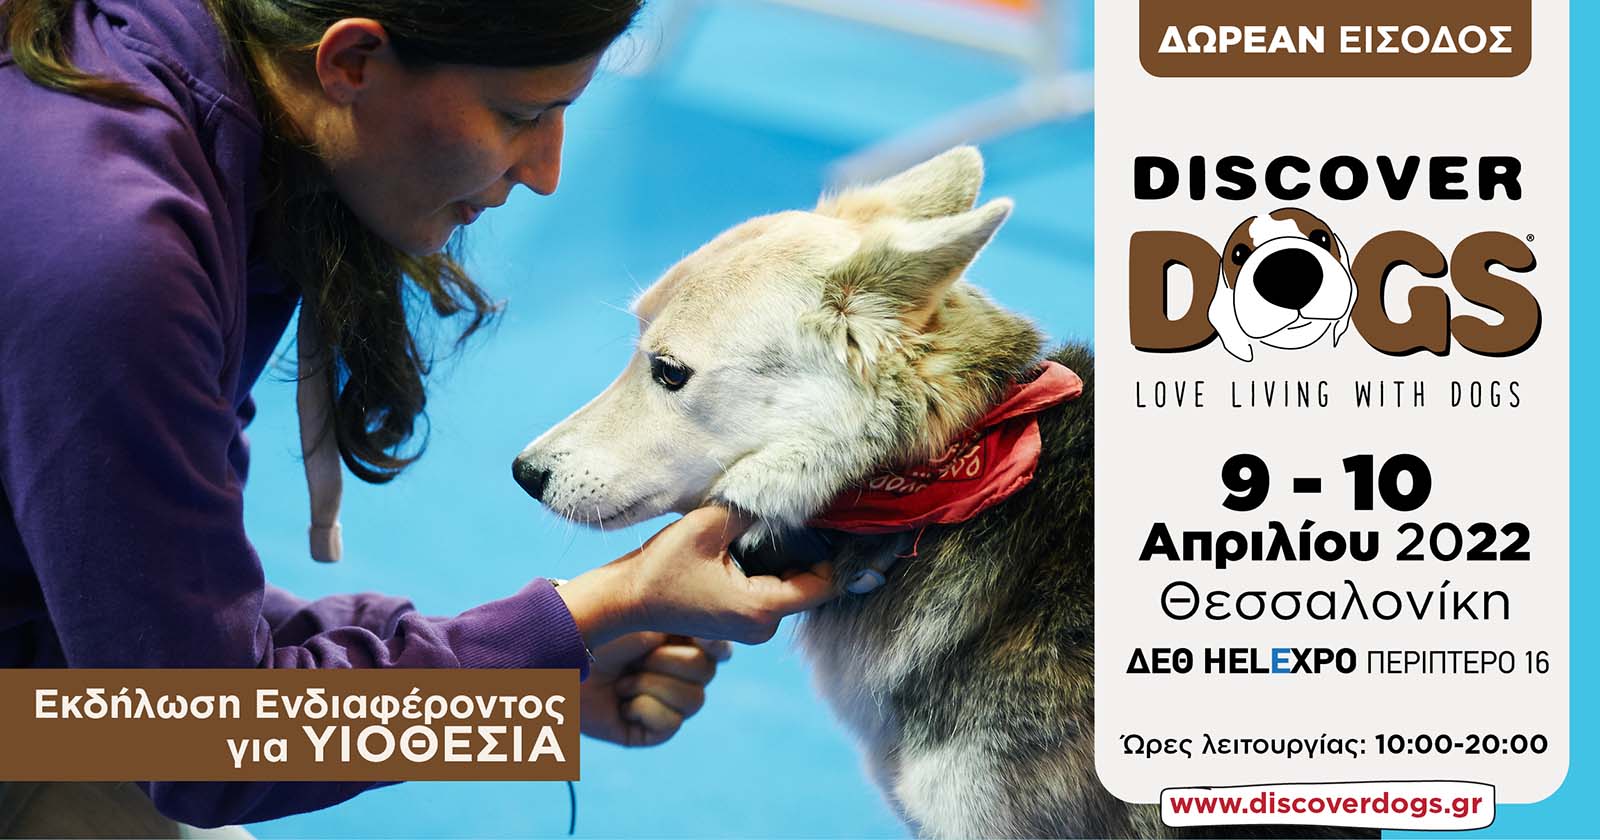 discover-dogs-ekdilosi-endiaferontos-gia-yiothesia-2022.jpg